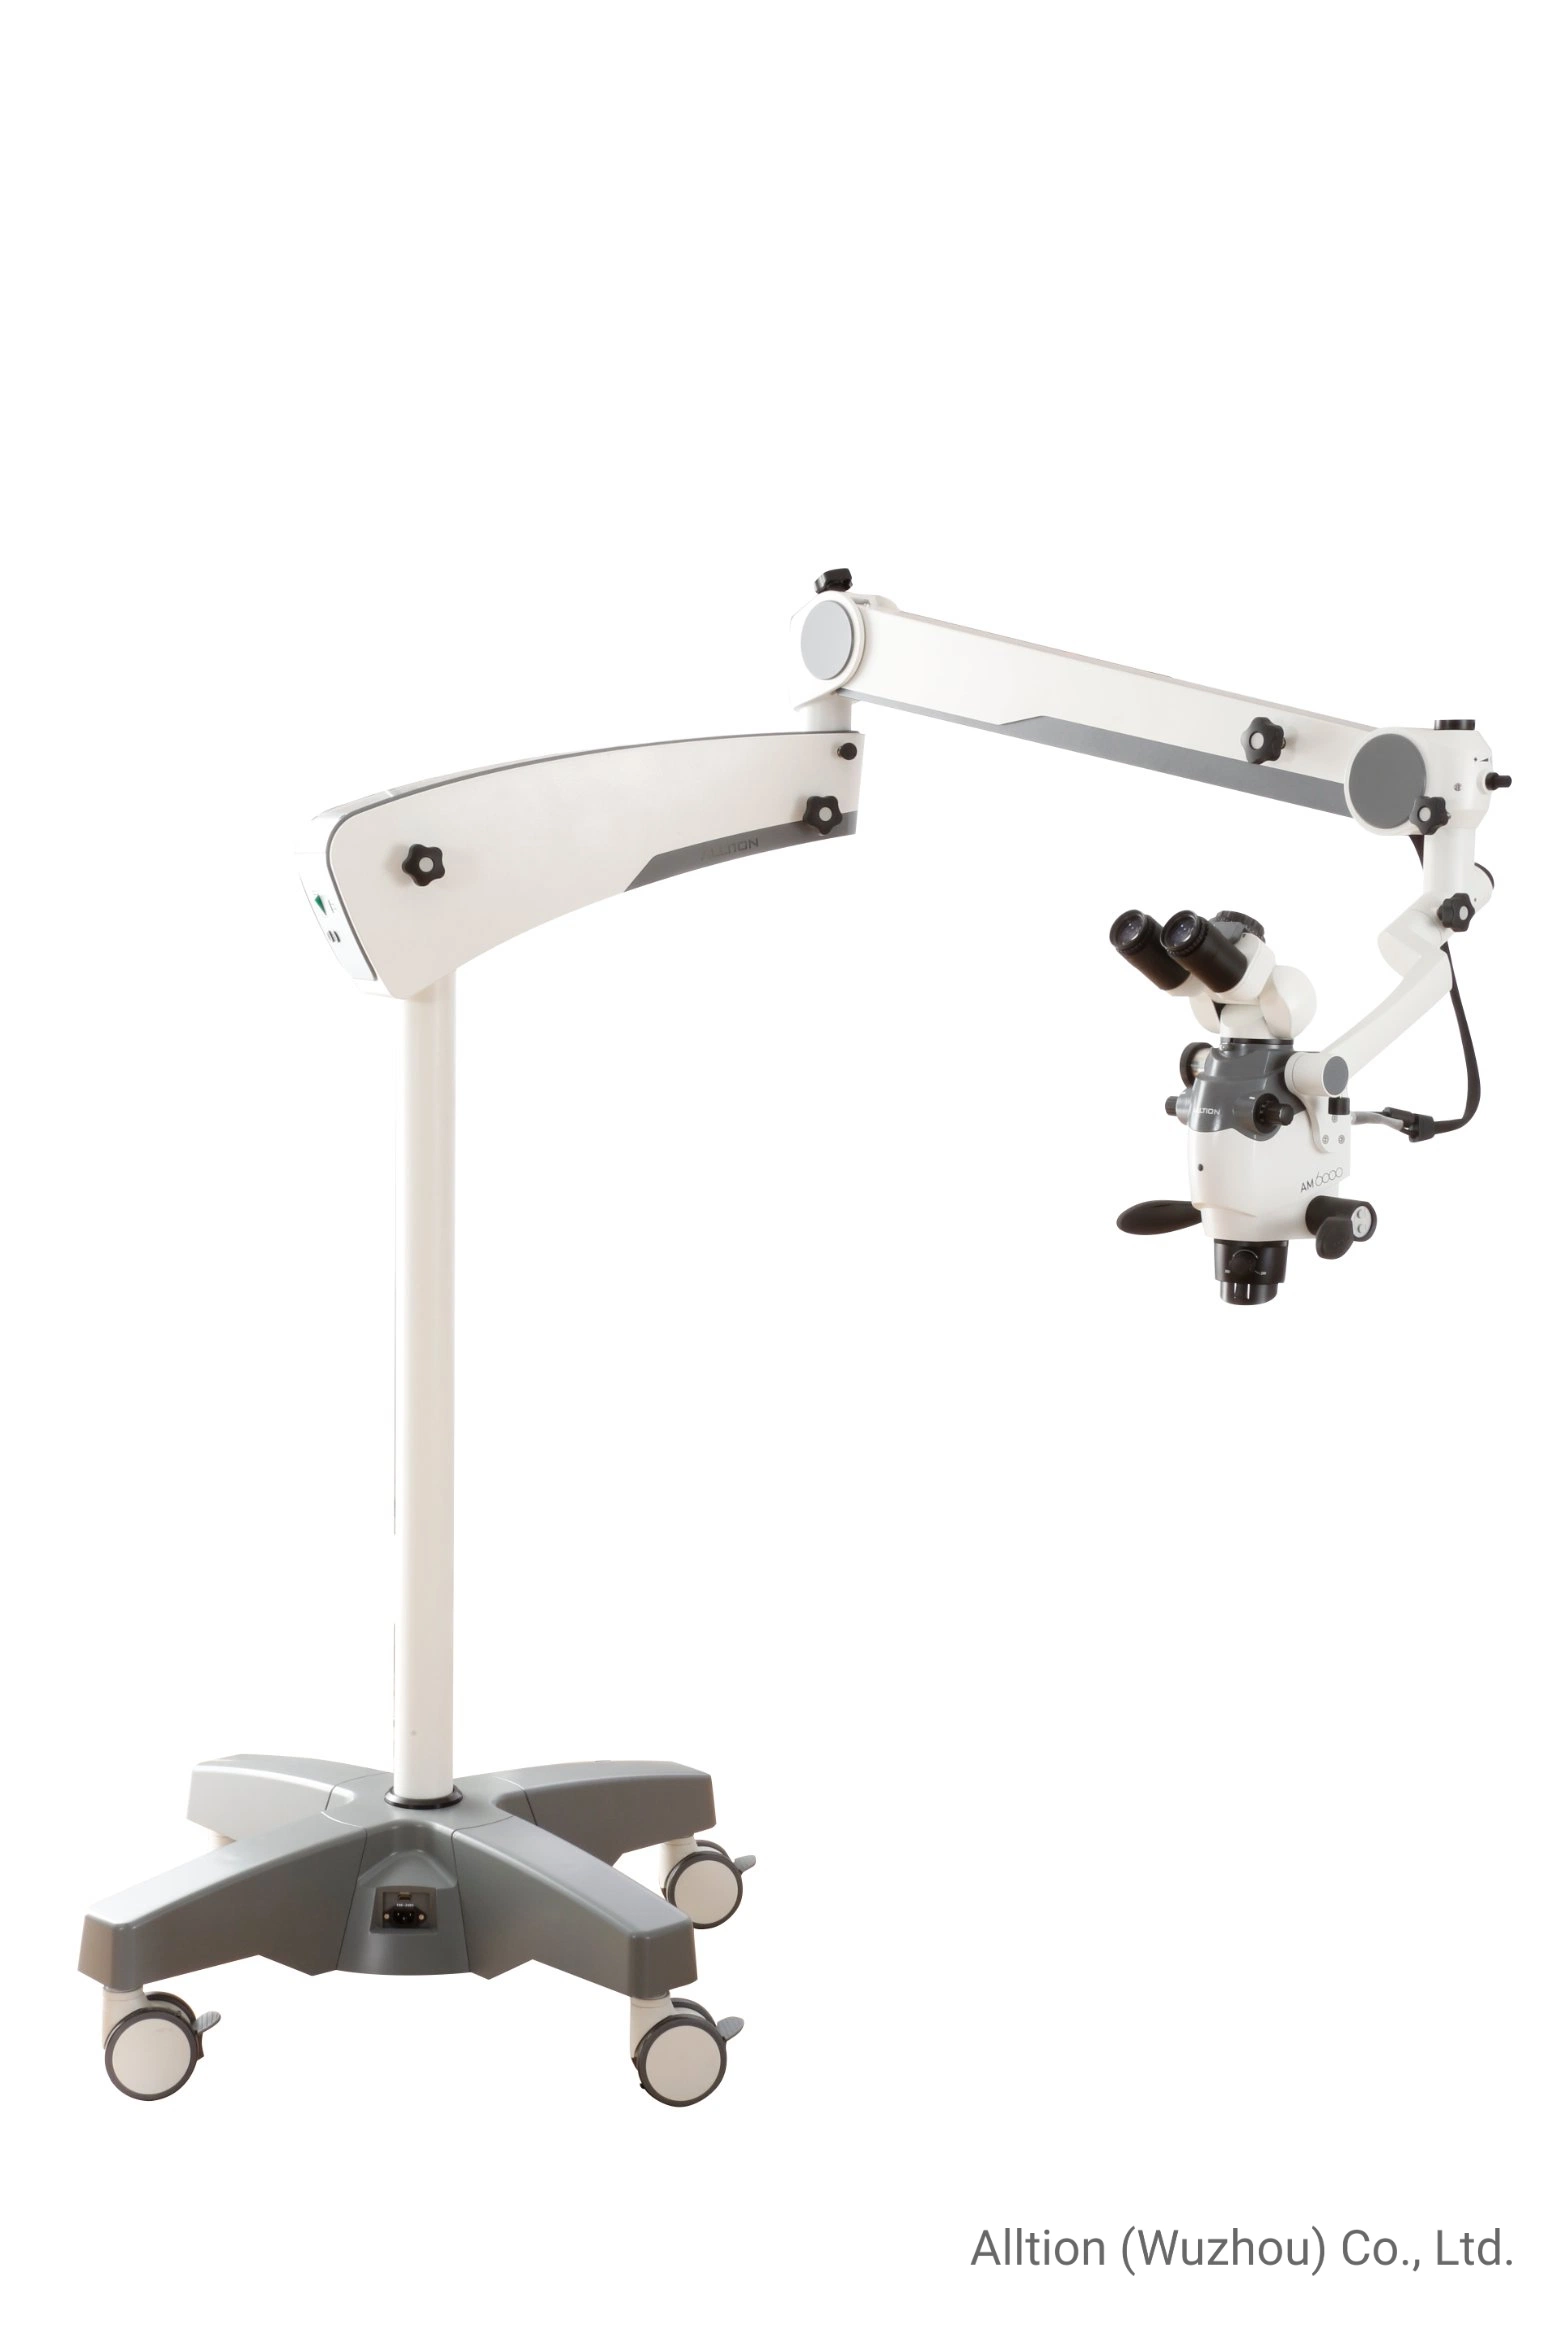 Am-6000 Zoom Mikroskop für chirurgische Chirurgie Operation in Ent Zahnorthopädie Handchirurgie Neurochirurgie Andrologie und Urologie P &amp; R Veterinär